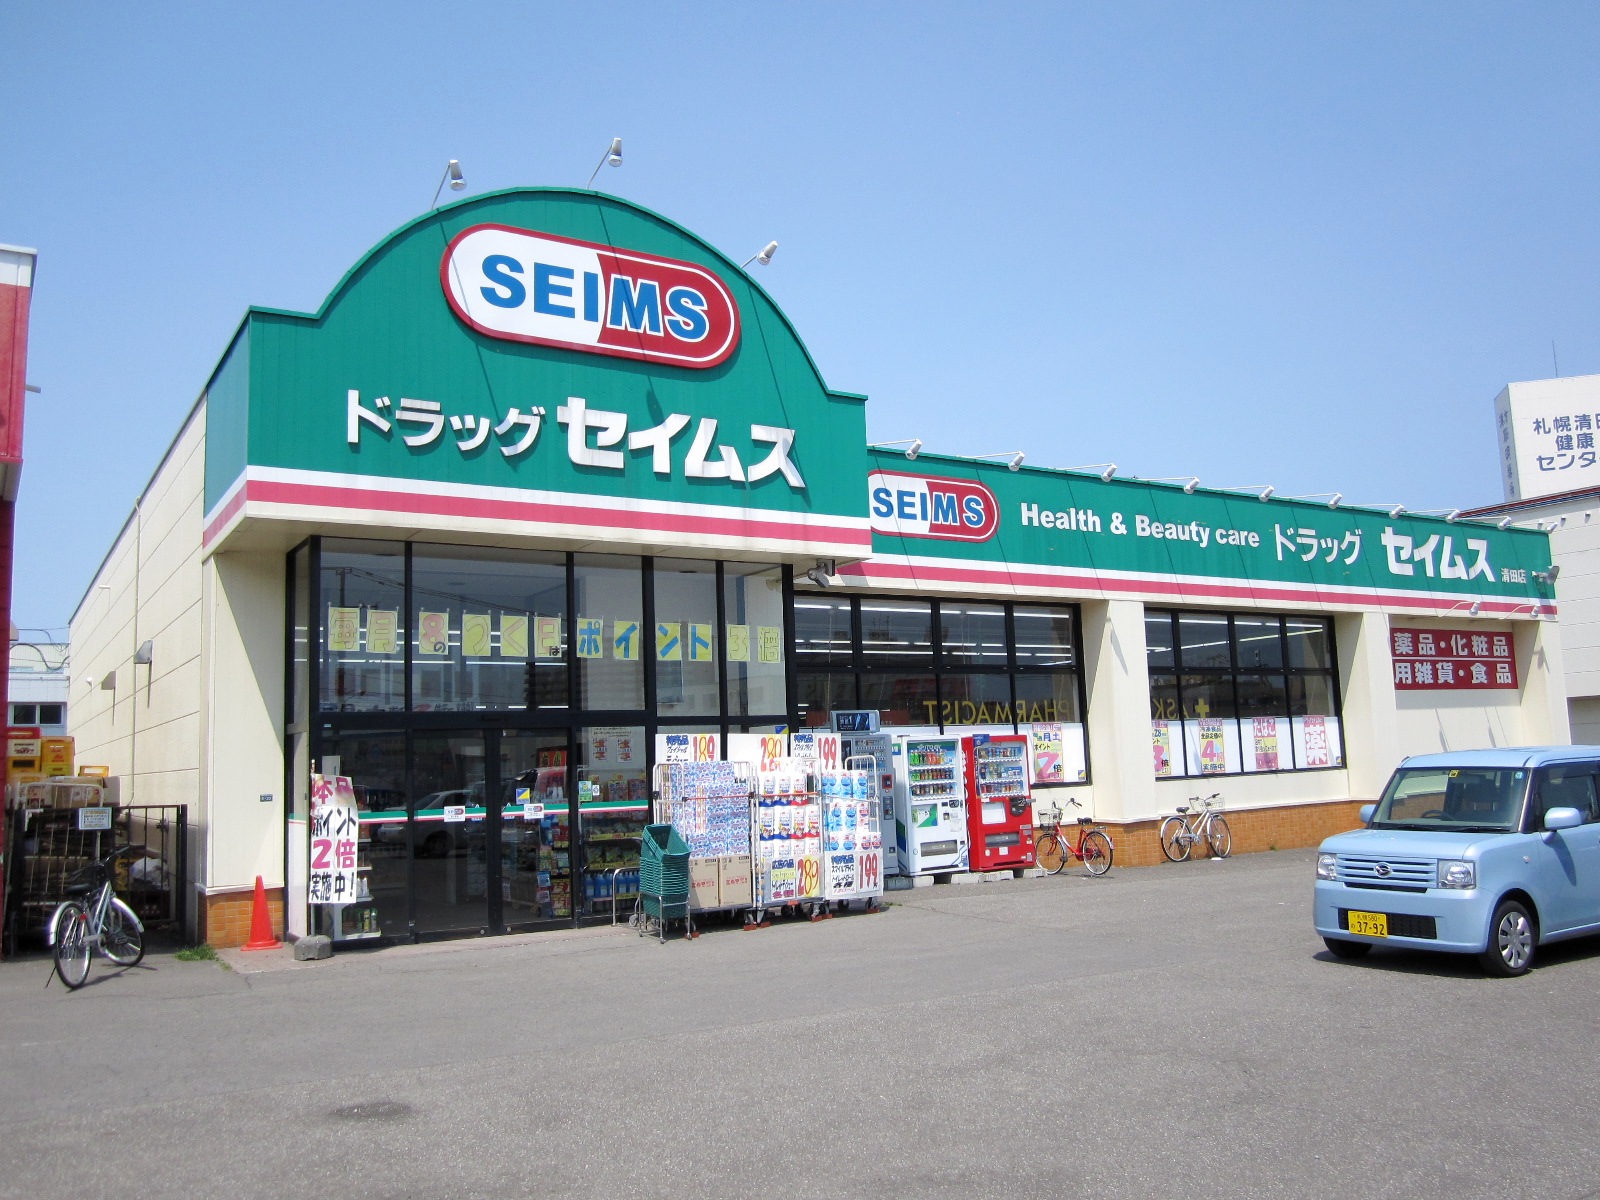 Dorakkusutoa. Drag Seimusu Kiyota store 907m to (drugstore)